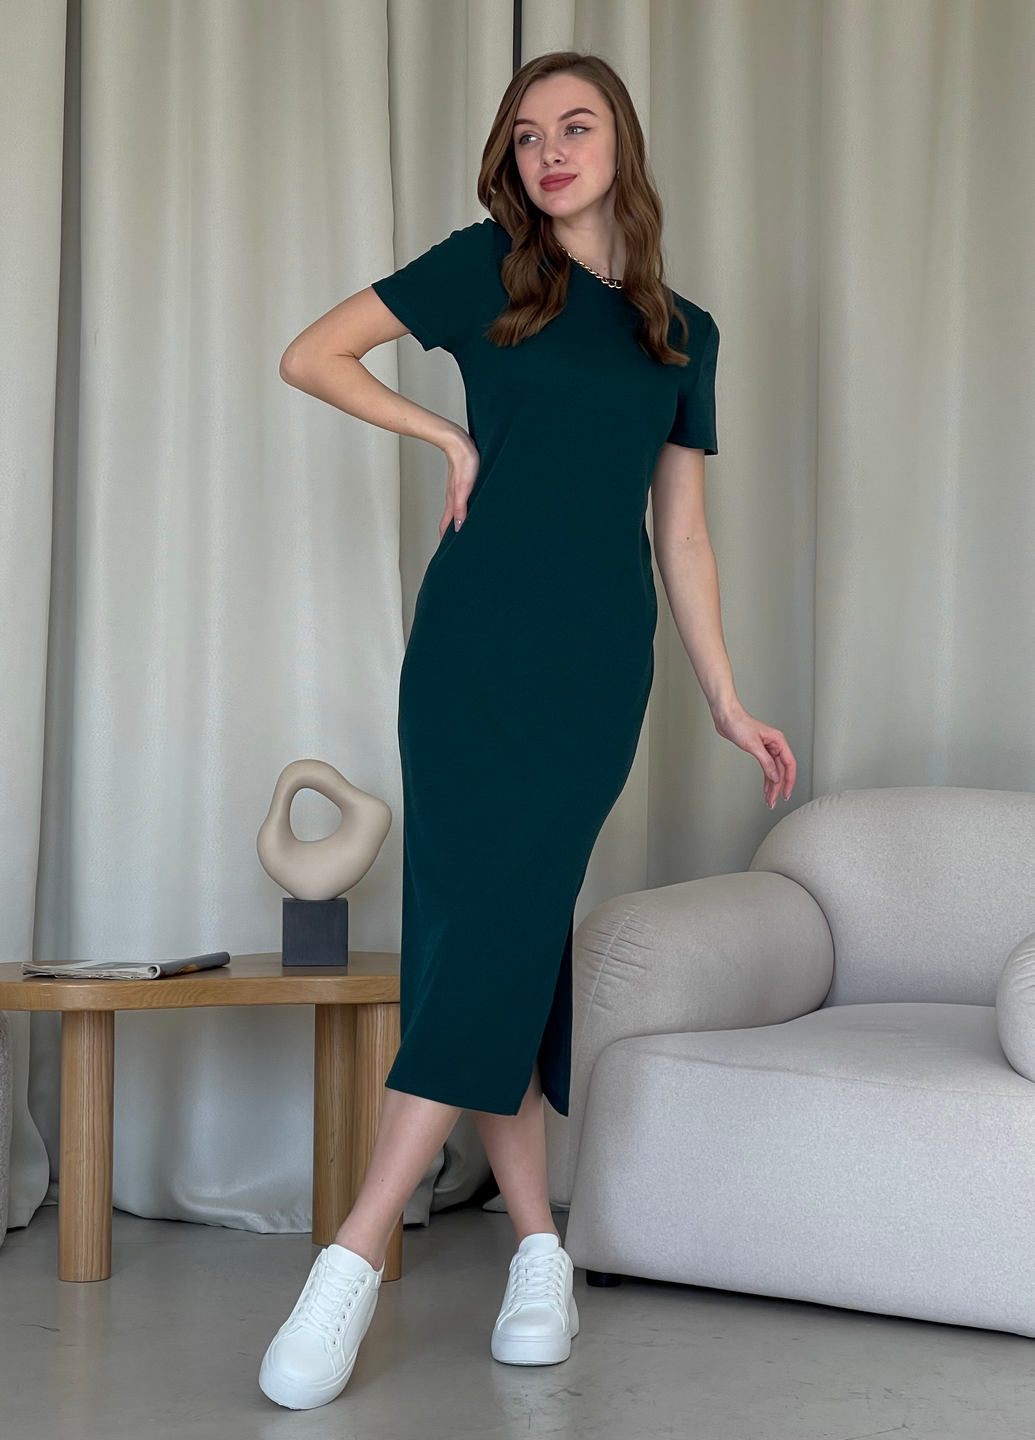 Купить Длинное платье-футболка в рубчик зеленое Merlini Кассо 700000132 размер 42-44 (S-M) в интернет-магазине